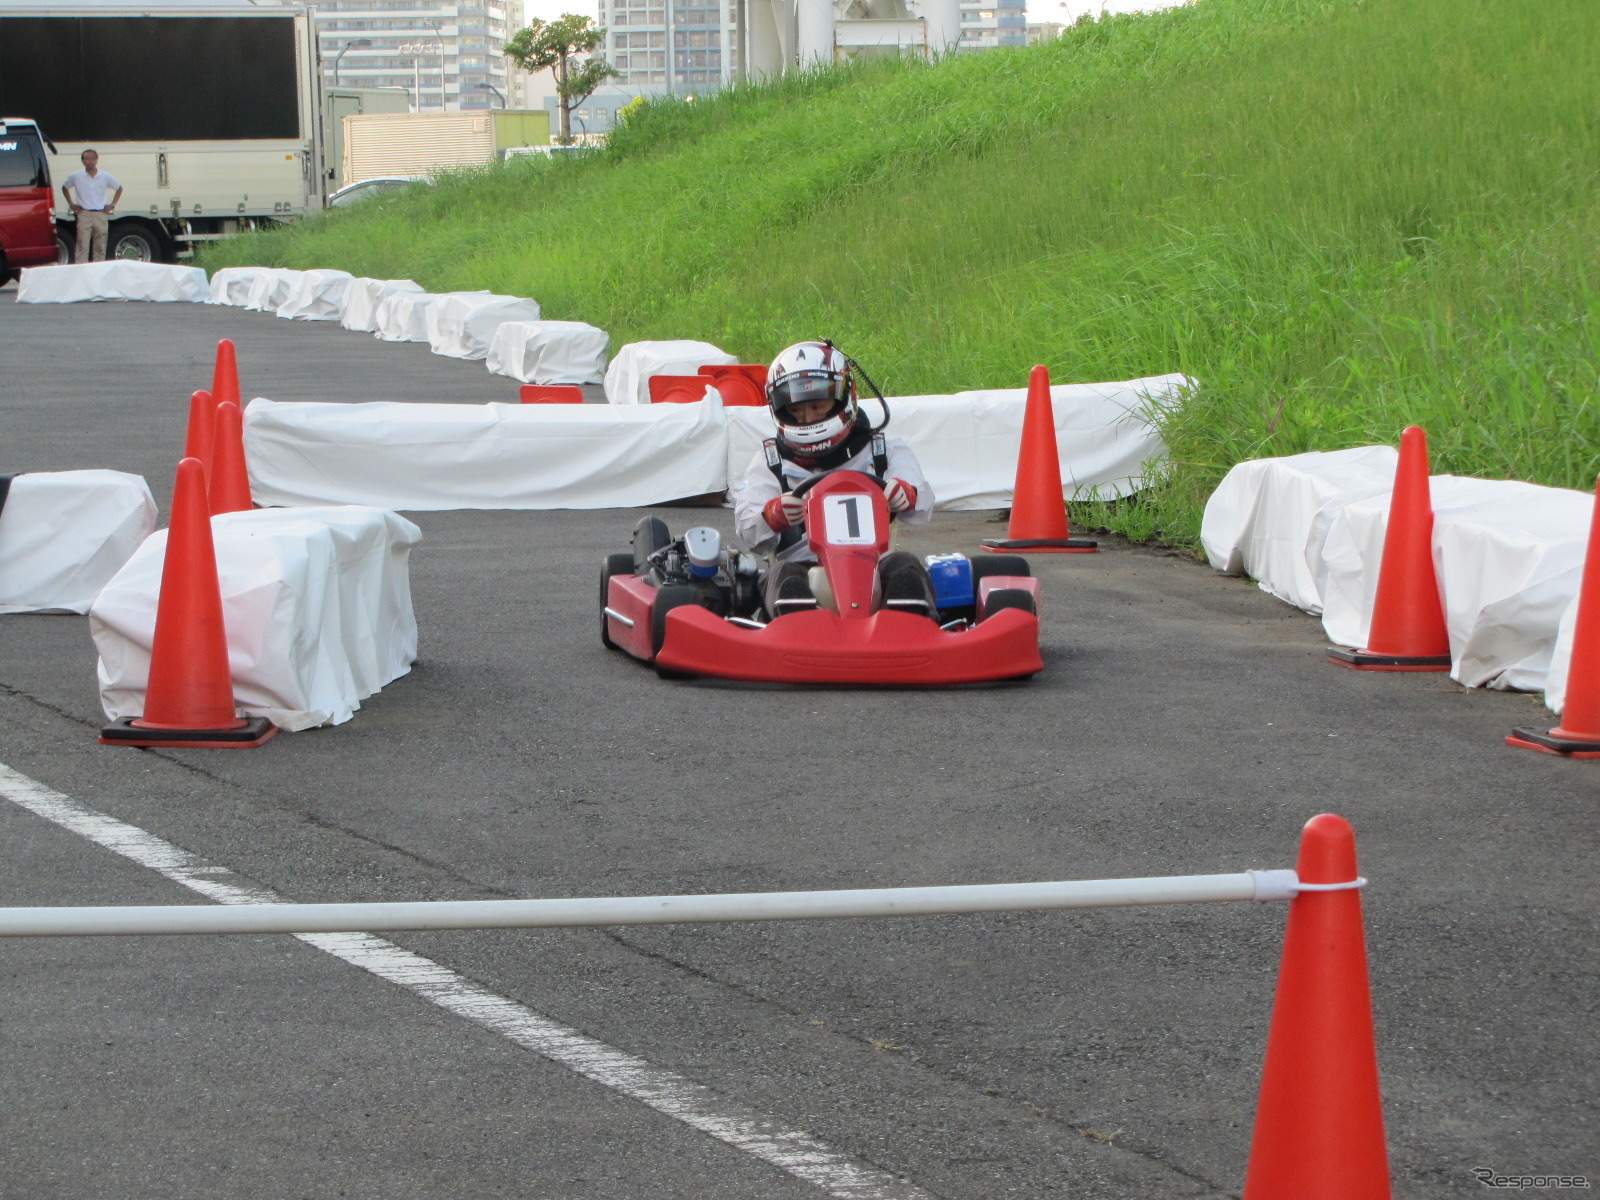 トヨタ自動車の豊田章男社長は9月8日、プレジャーボートの試乗会に参加した報道陣と横浜みなとみらいの特設コースでレーシングカートで対決をした。